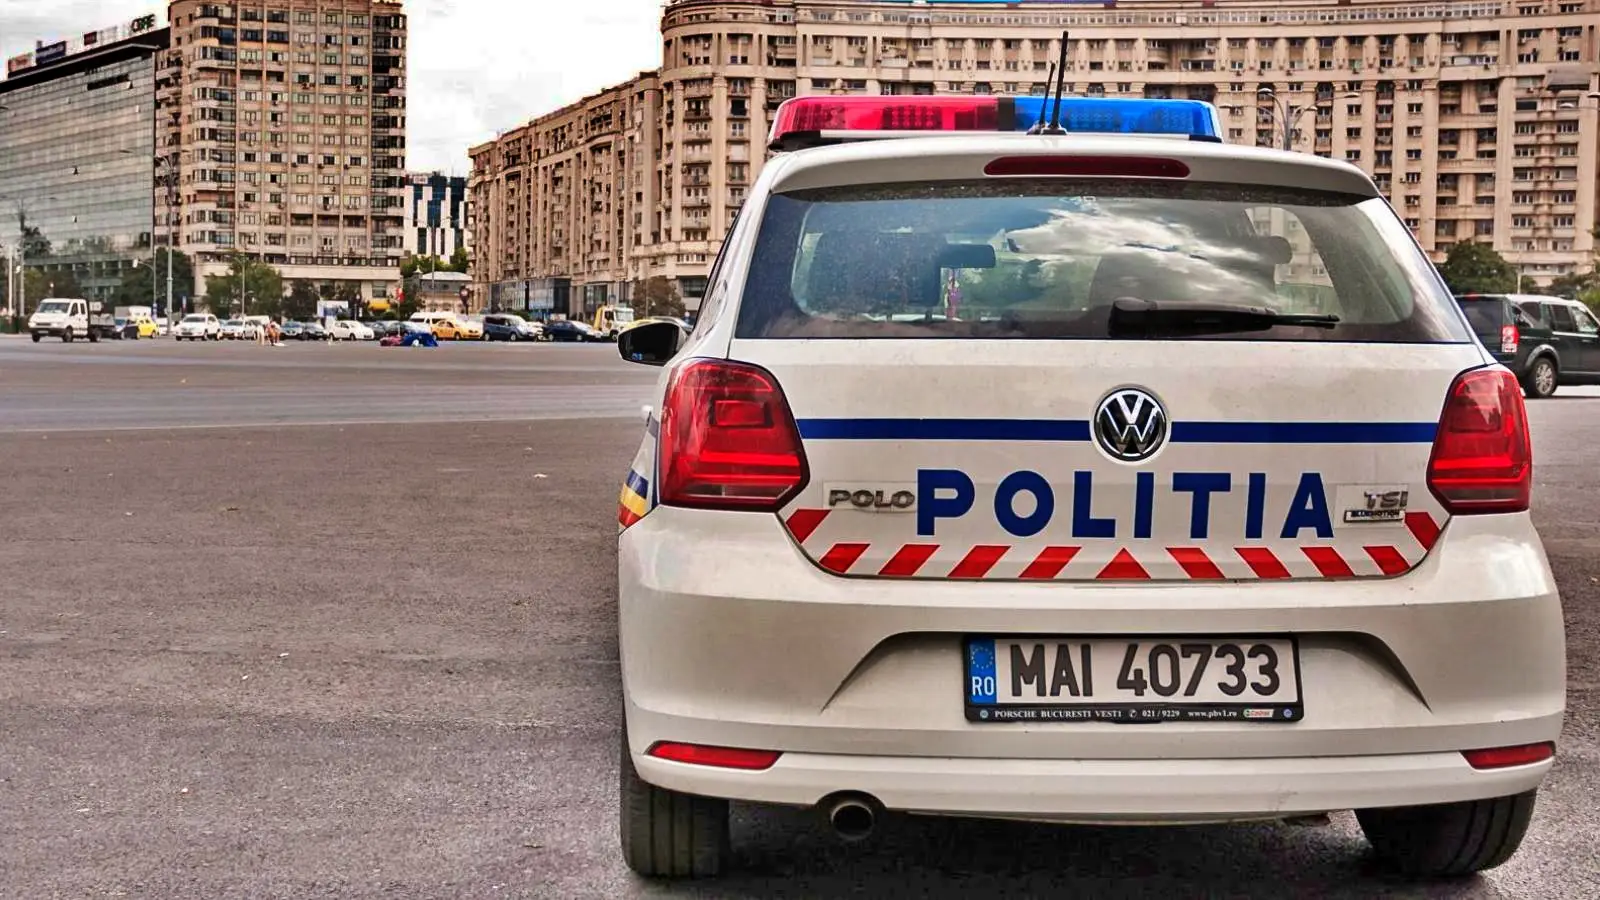 La policía rumana continúa la serie de advertencias a los conductores rumanos